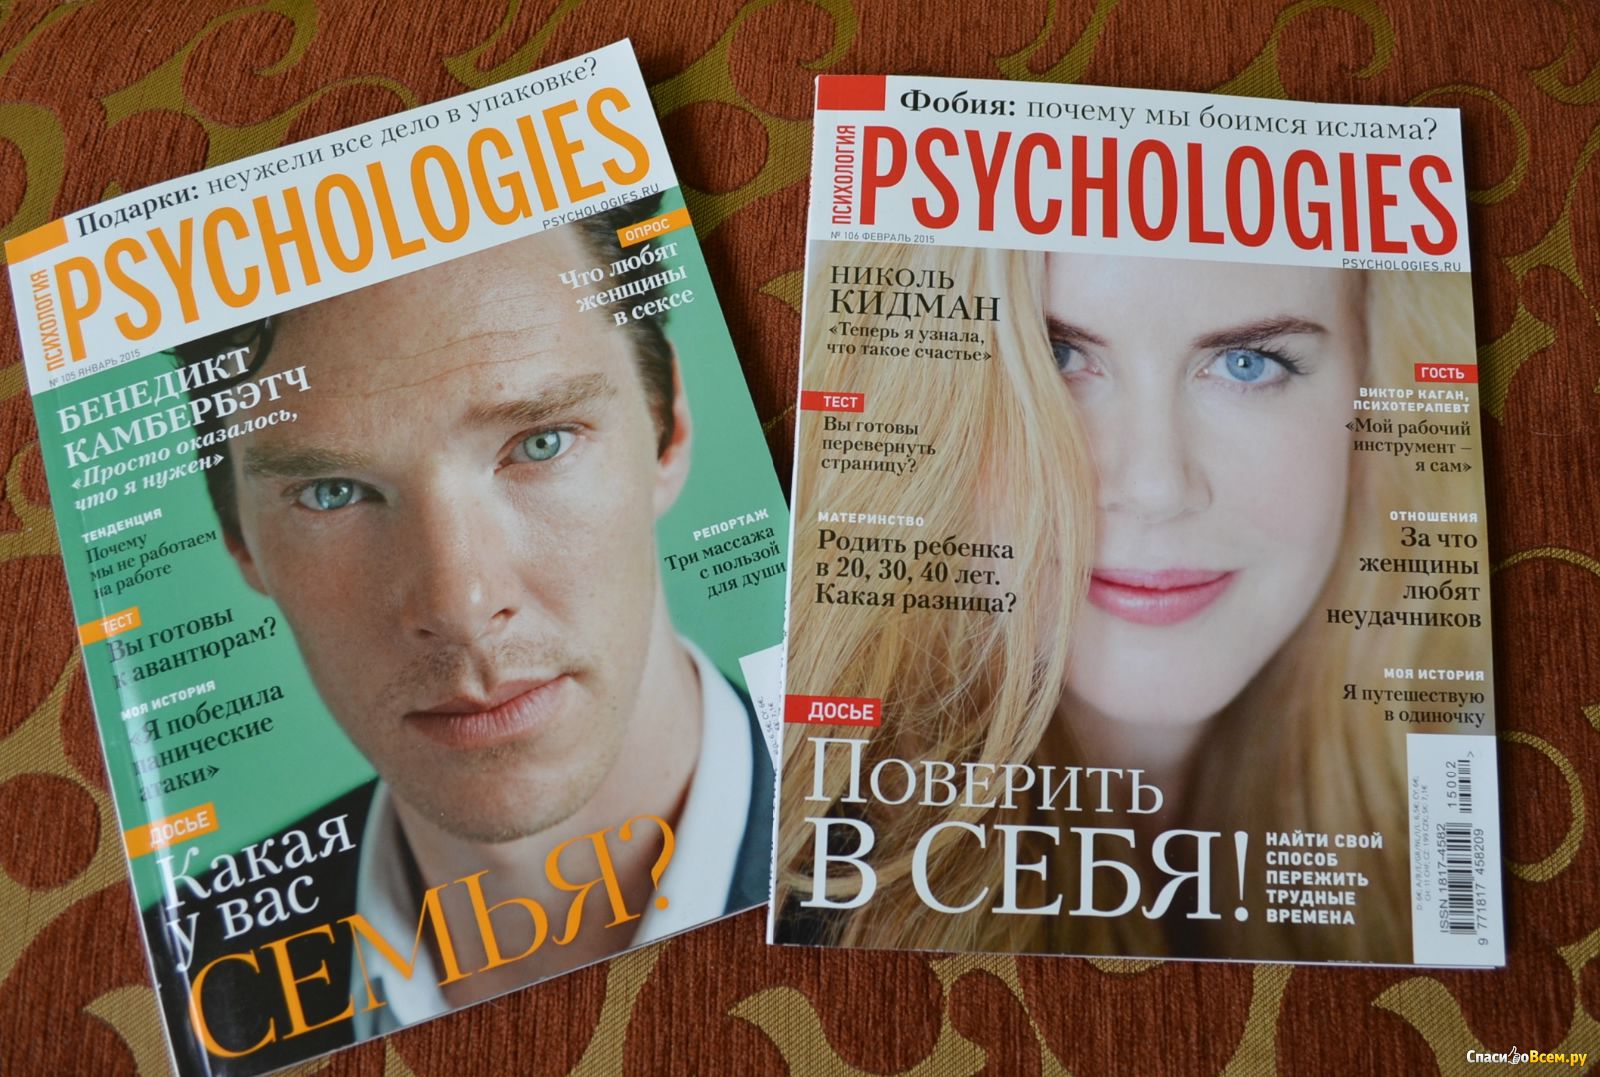 Журнал психоанализ. Журнал Psychologies. Журнал по психологии. Обложка Psychologies. Psychologies статьи в журнале.